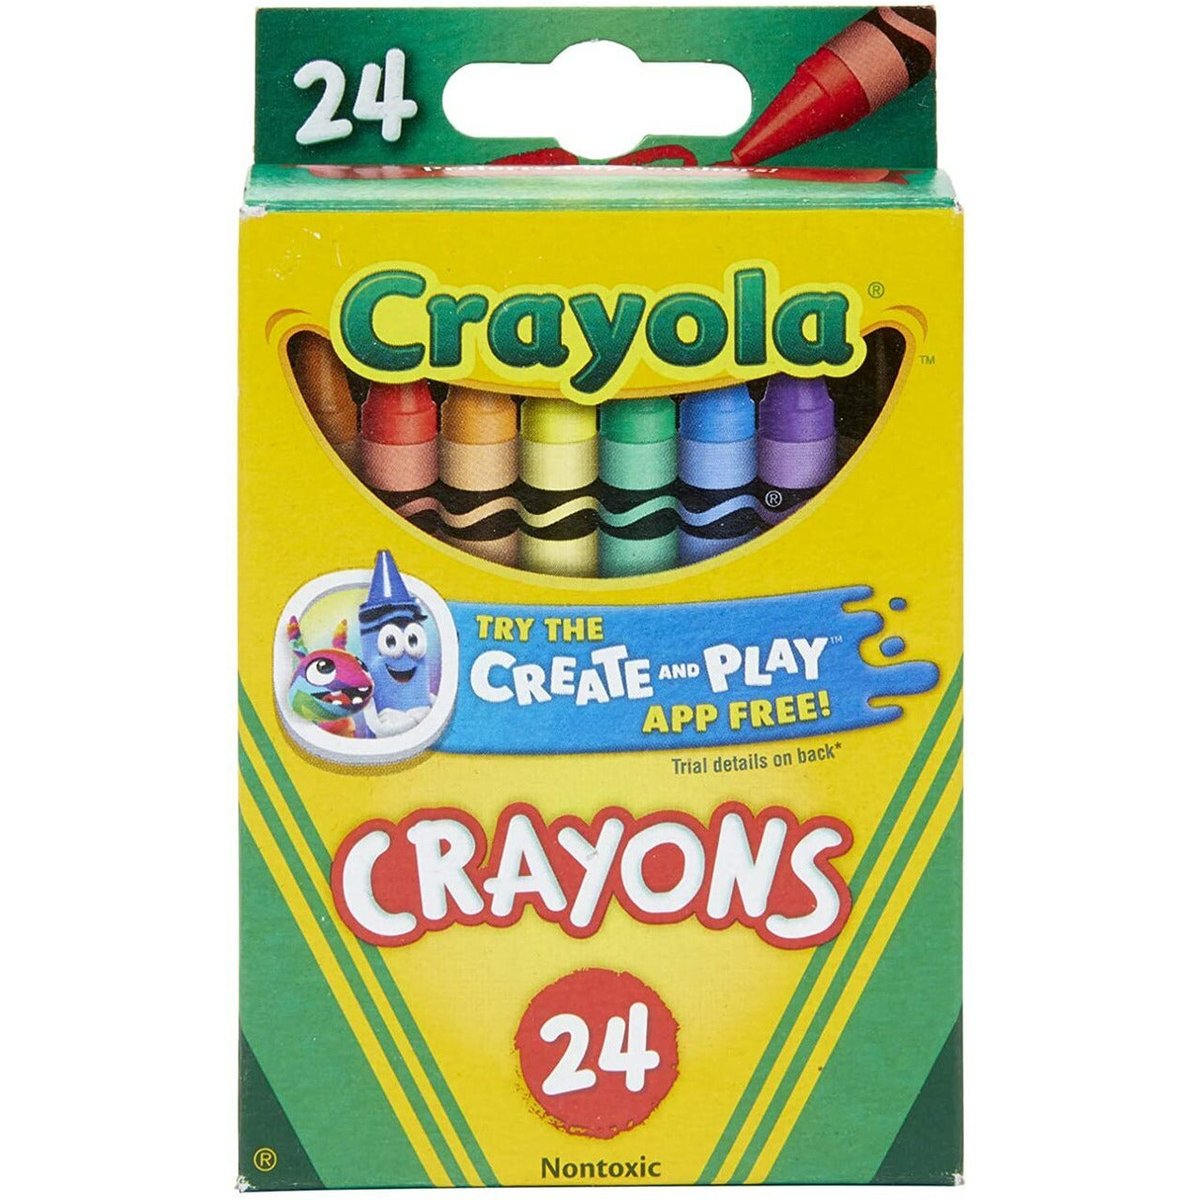 Crayola® Metallic Crayons, Pack Of 24 Crayons